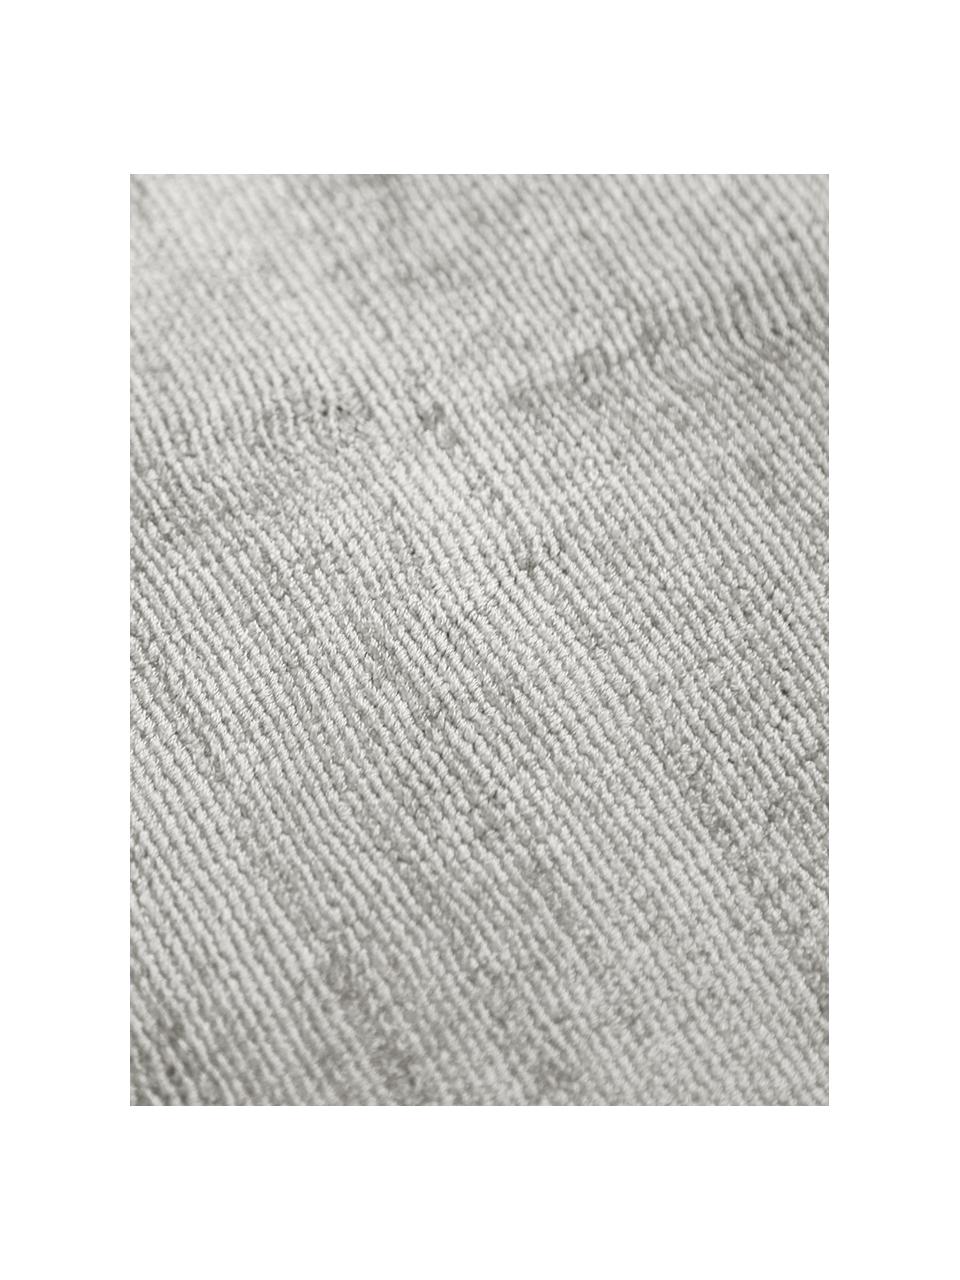 Tappeto rotondo in viscosa color grigio chiaro-beige tessuto a mano Jane, Retro: 100% cotone, Grigio chiaro, Ø 250 cm (taglia XL)